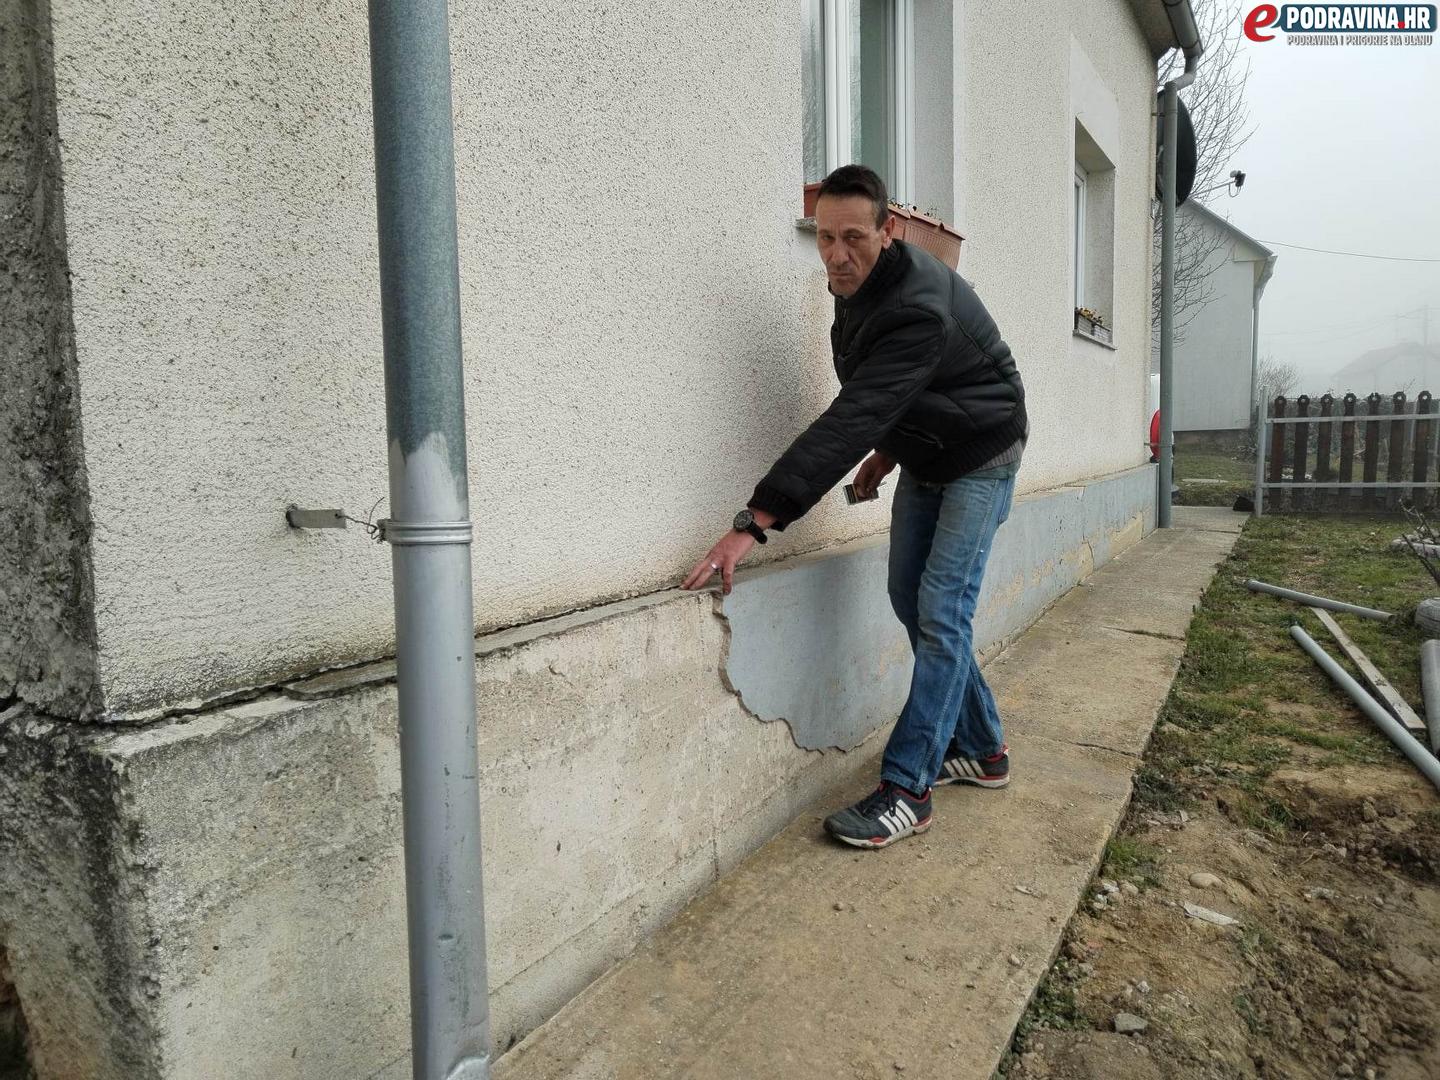 Vladimir Ćirković pokazuje oštećenja na kući, Subotica Podravska